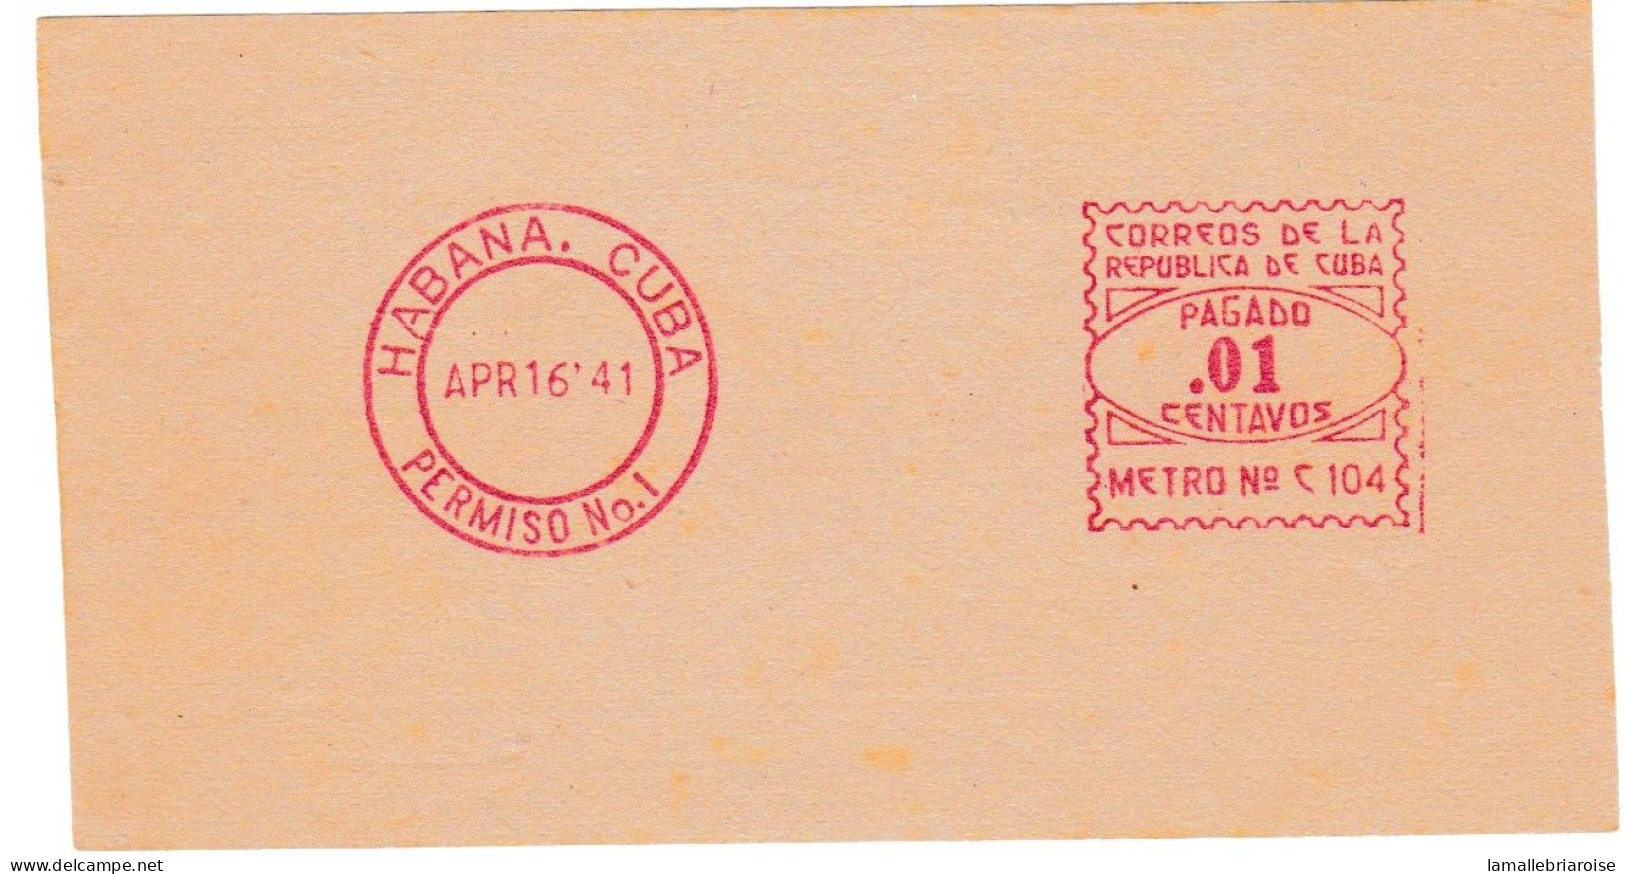 Cuba, Habana, Essai De Machine à Affranchir, 16 Avril 1941 - Sin Dentar, Pruebas De Impresión Y Variedades